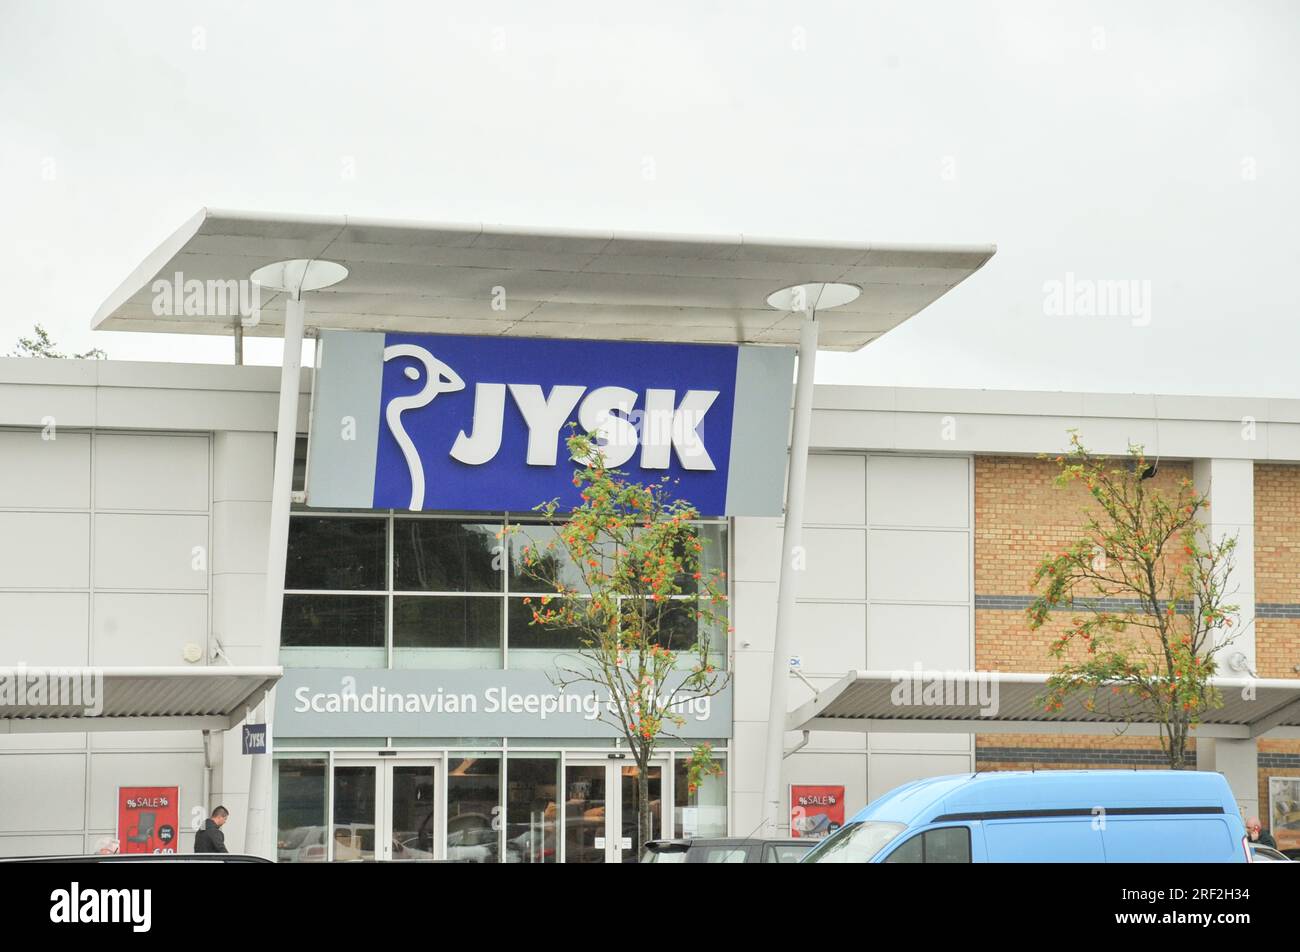 JYSK Danish retail chain Stock Photo